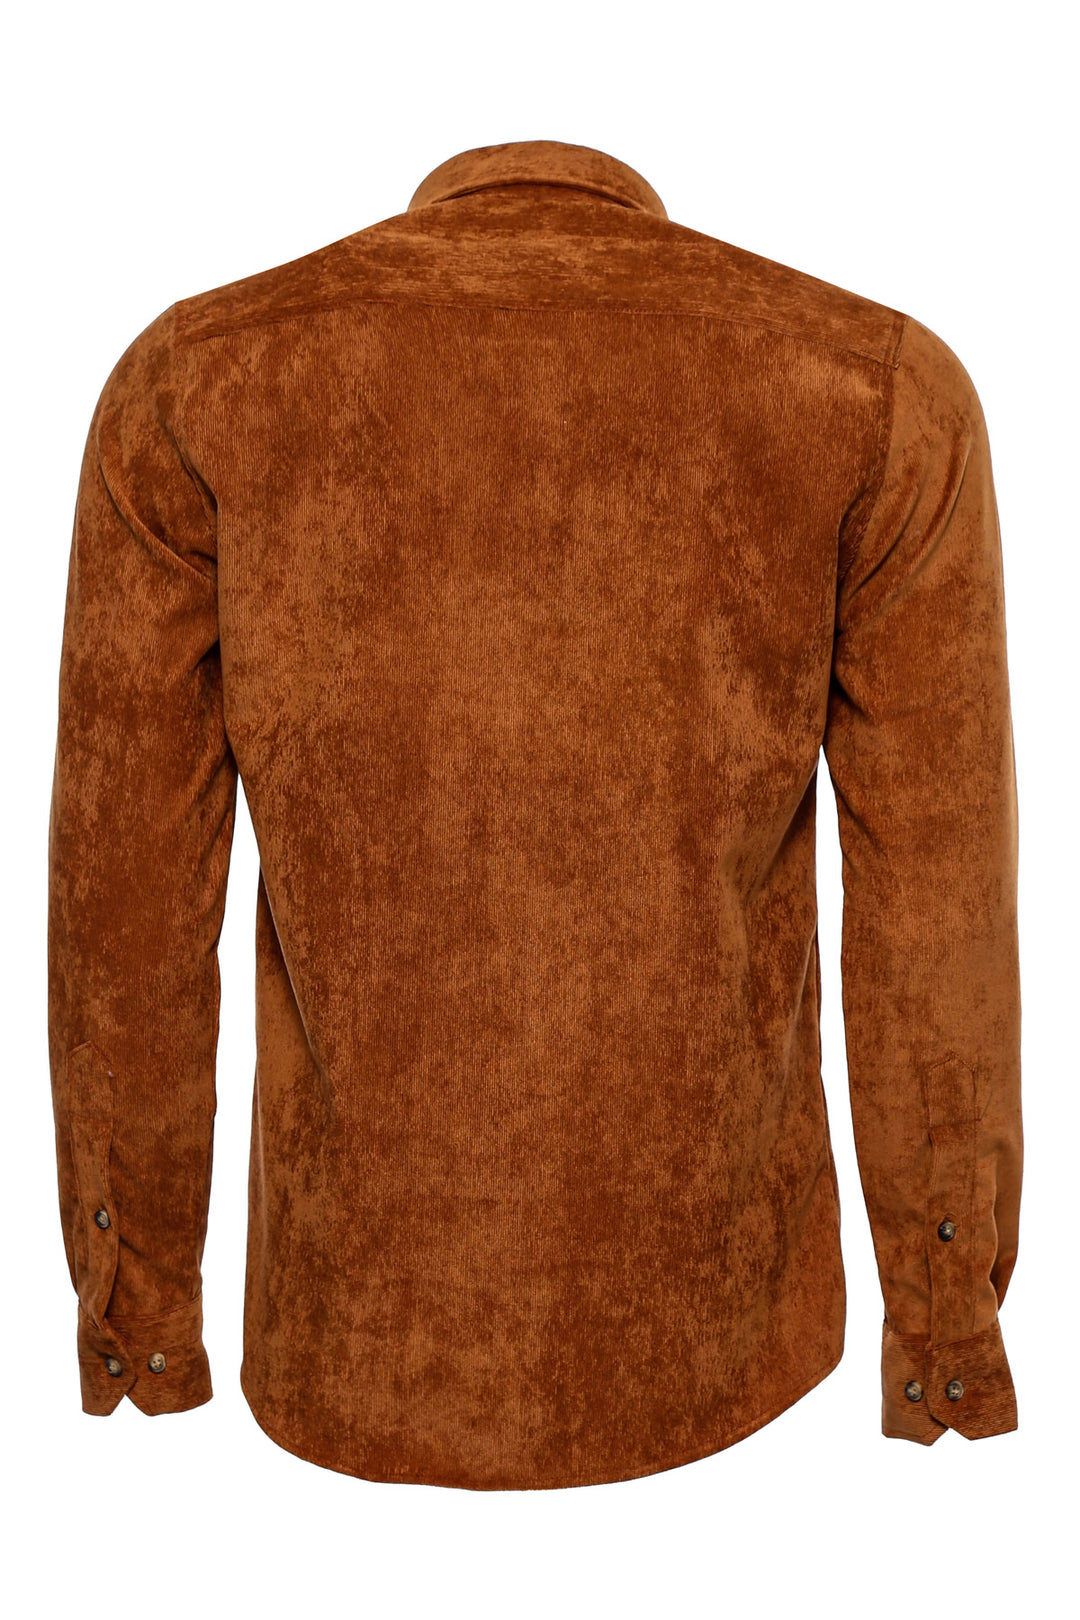 Brown Long Sleeves Velvet Men's Shirt - Wessi